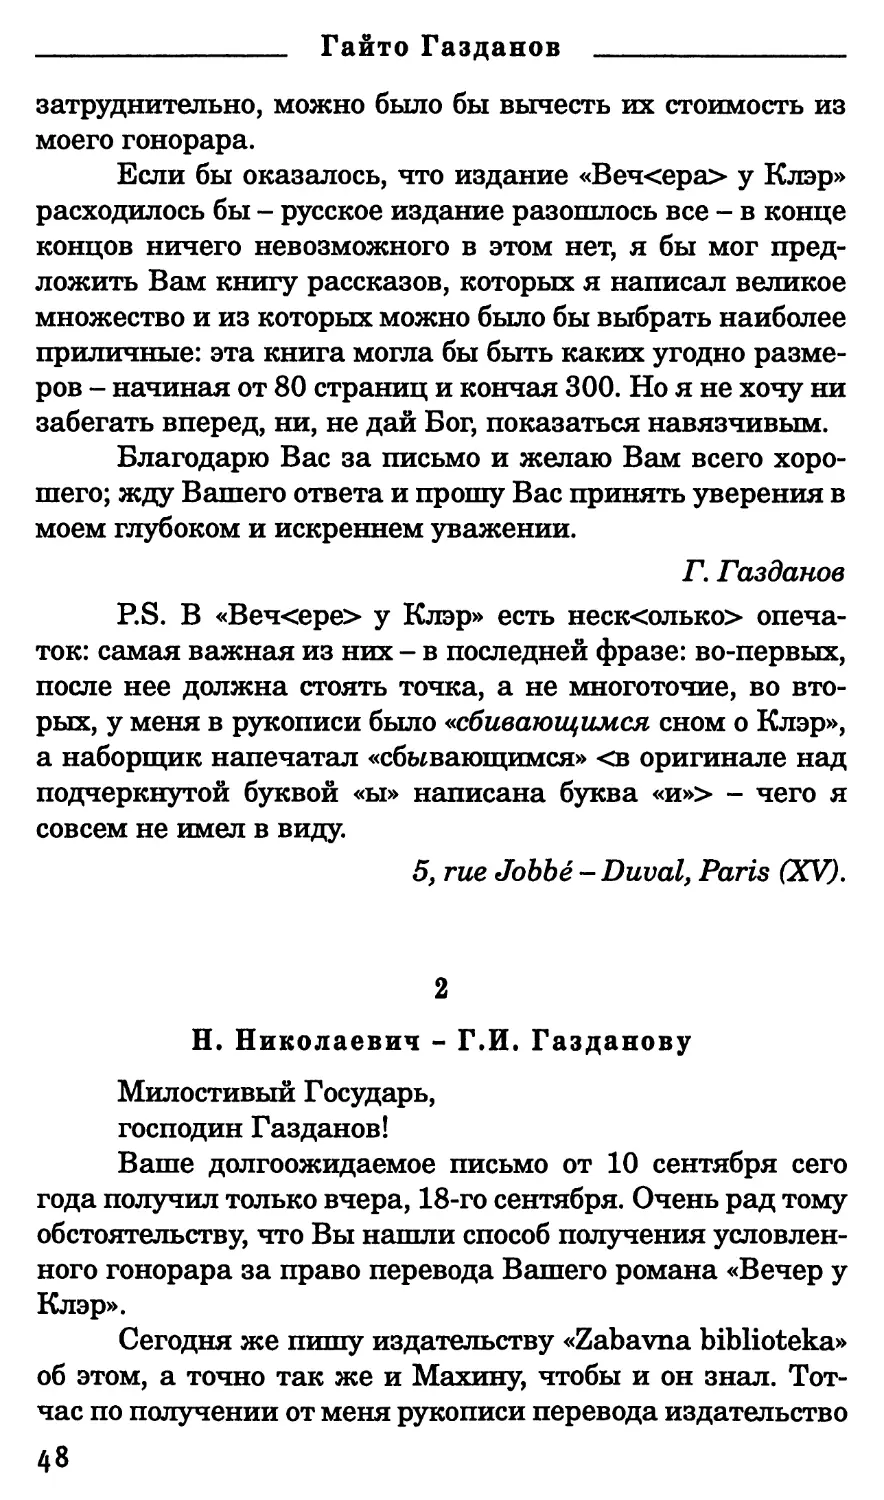 2. Н. Николаевич - Г.И. Газданову . 19 сентября 1932 г.